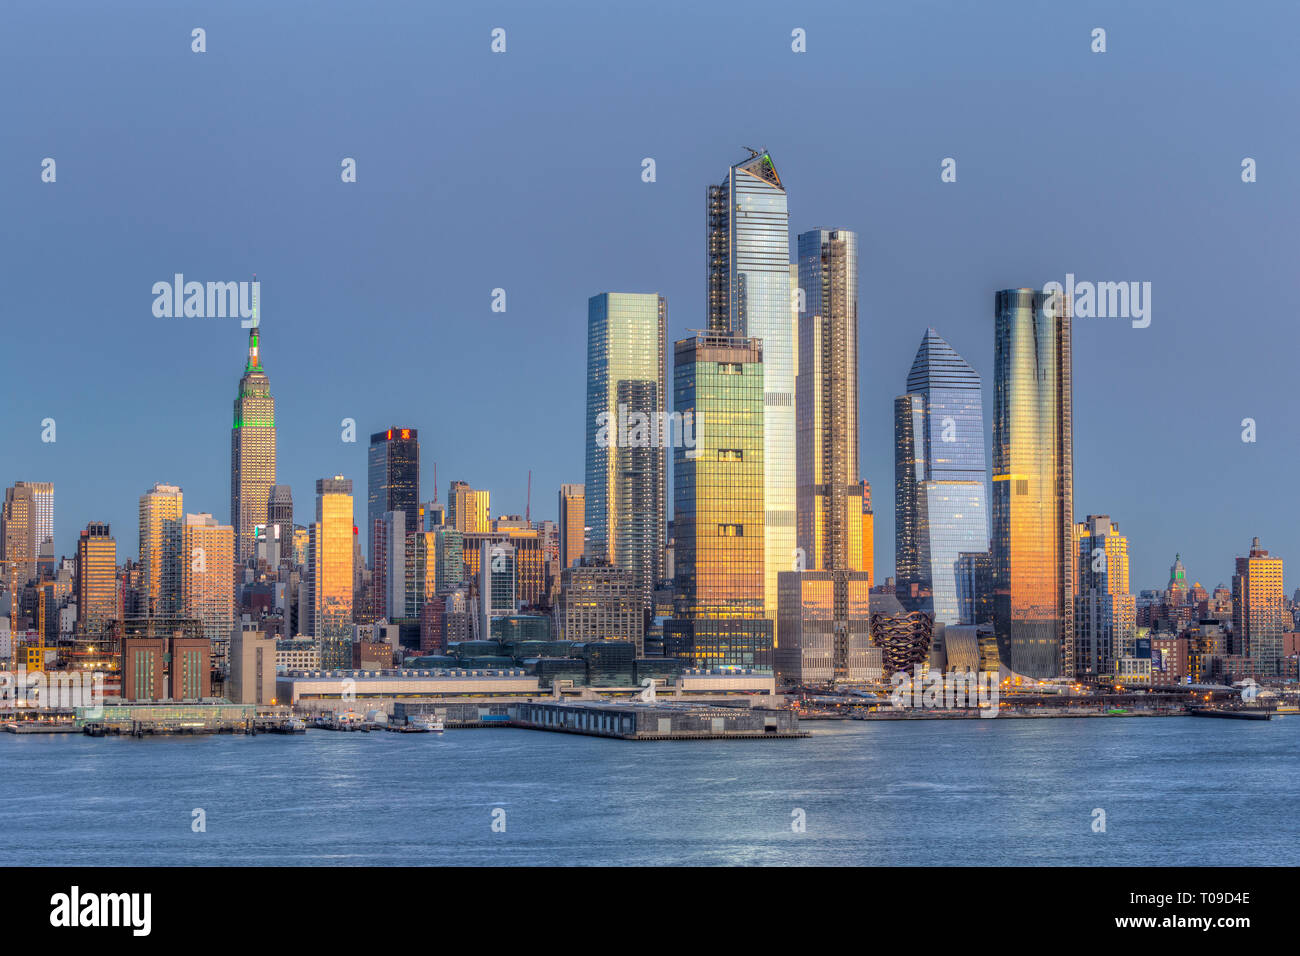 Die gemischte Hudson Yards Immobilien Development und anderen Gebäuden, die auf der West Side von Manhattan in New York City in der Dämmerung. Stockfoto